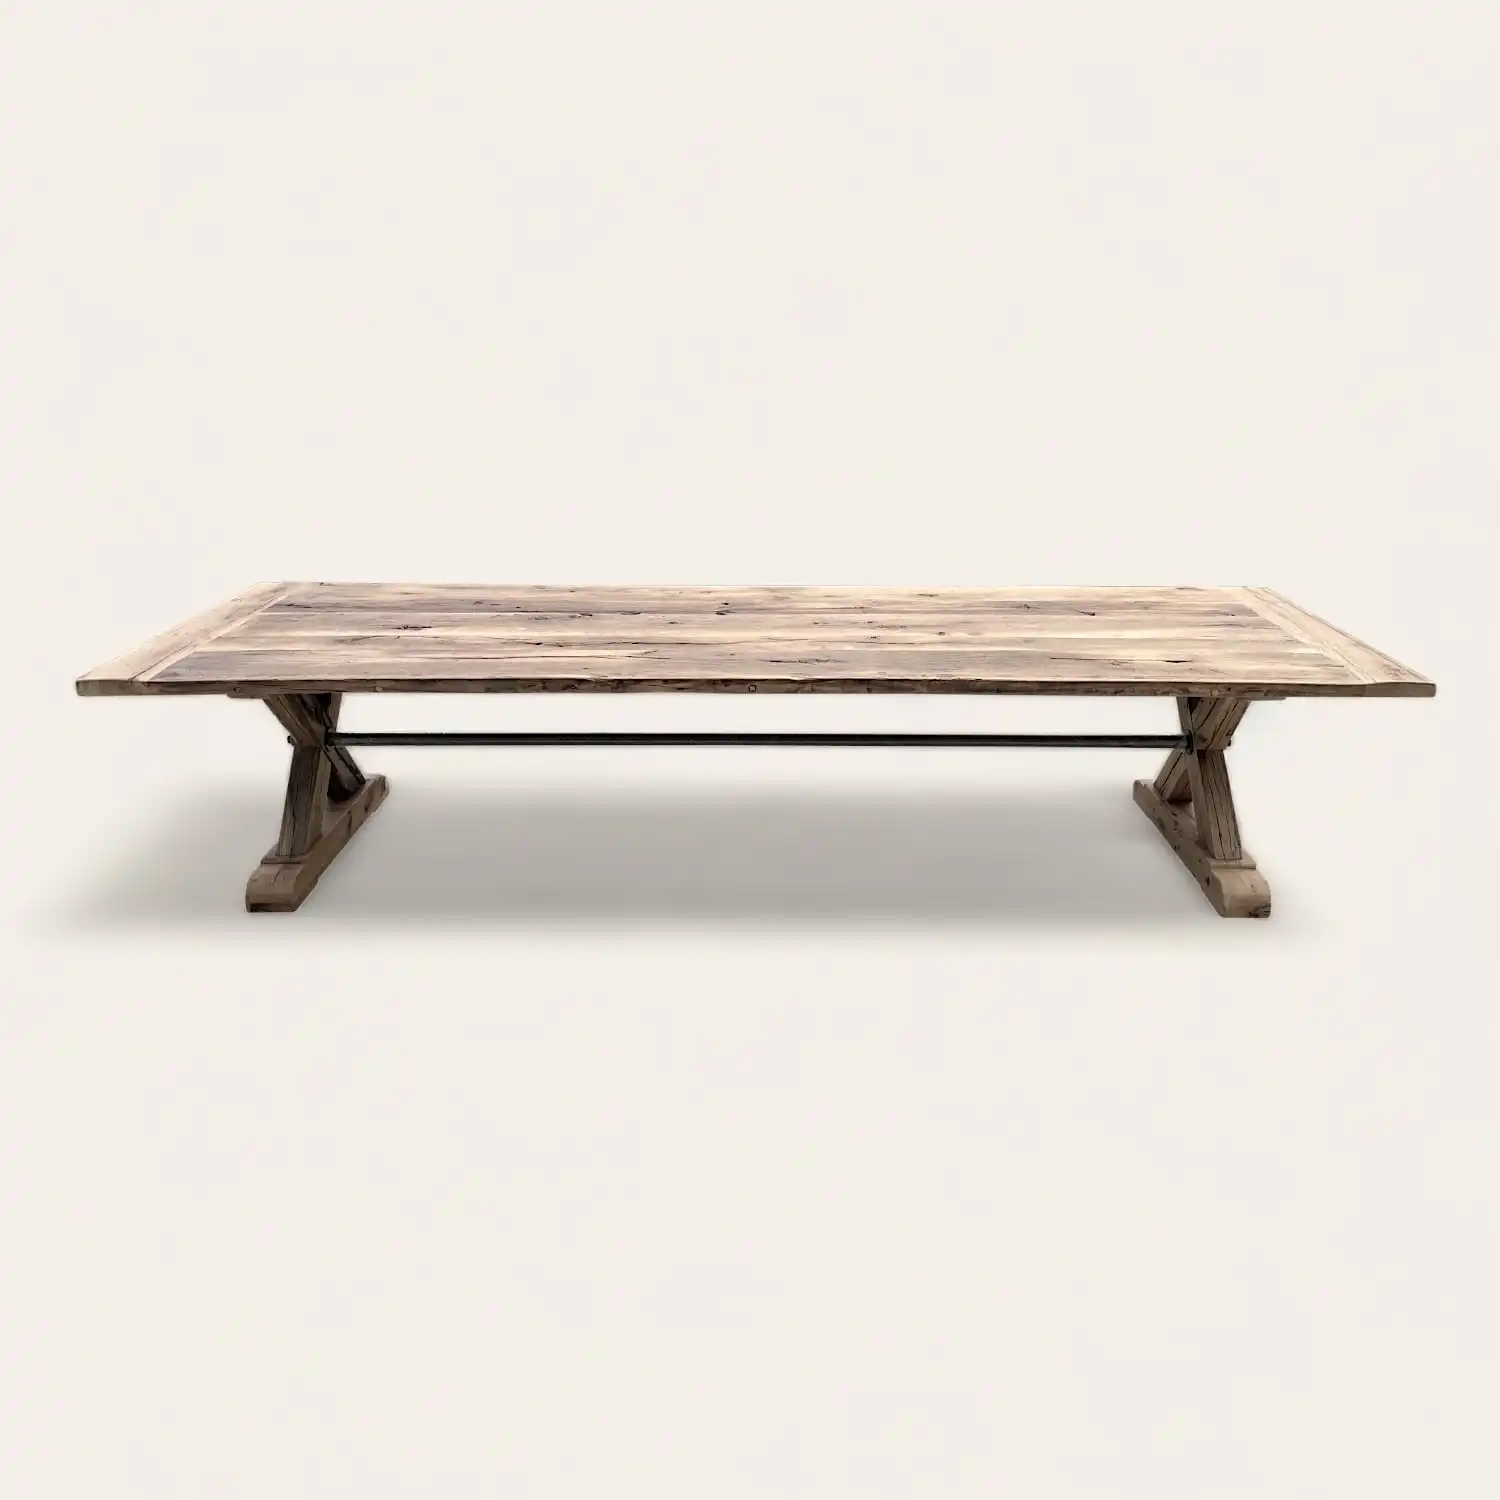  Une table basse rustique en bois avec un piètement en bois. 